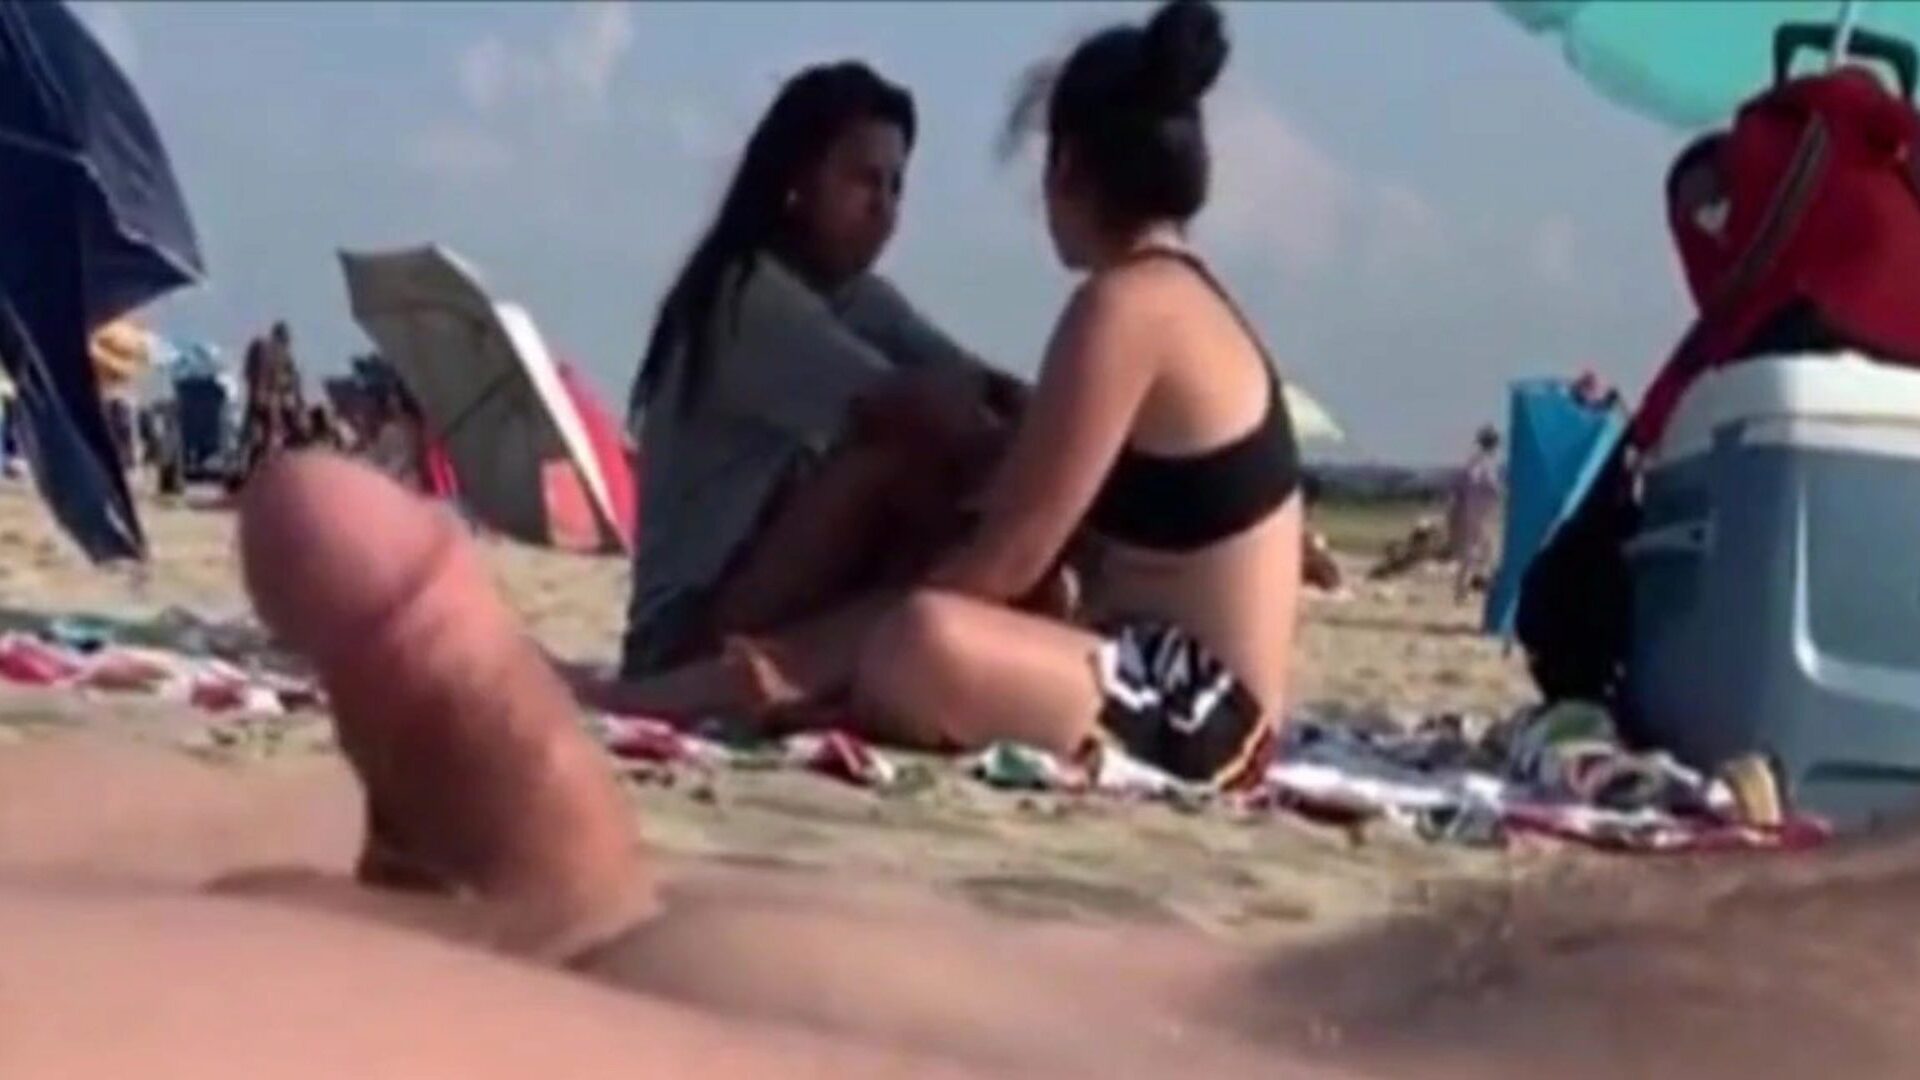 שתי בנות מסתכלות על מוט הגבר שלי על חוף ציבורי. שתי נערות שמטפלות בי בכפתור שלי מרפות מהן ..